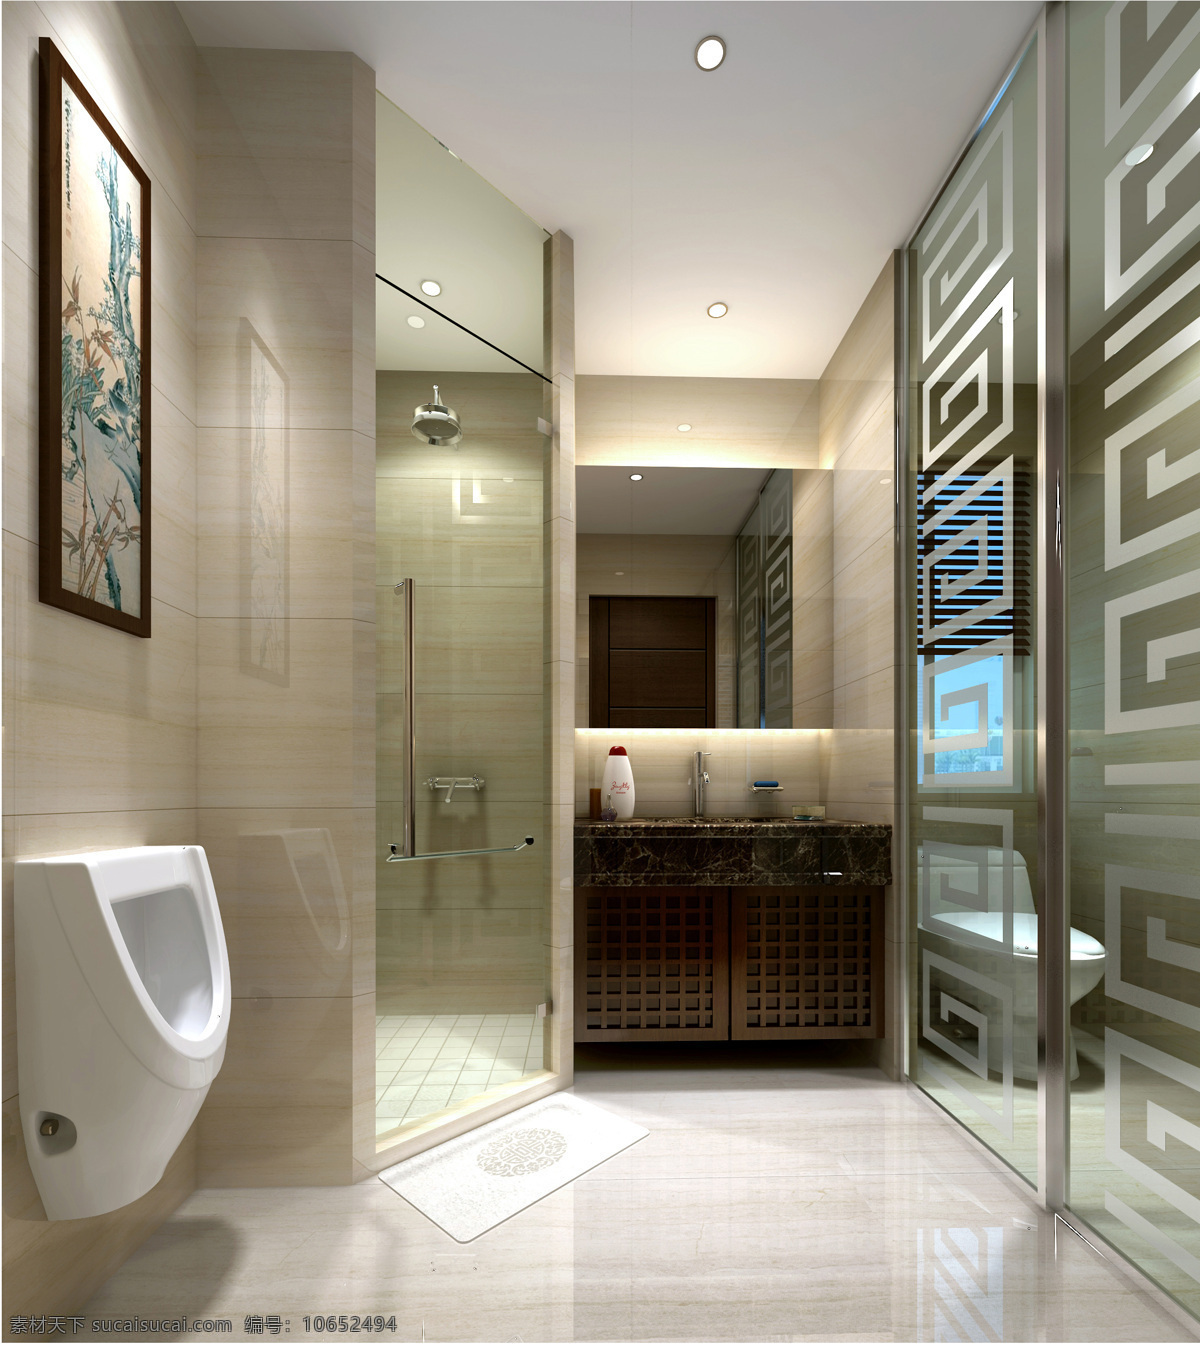 卫生间 别墅 环境设计 家装 淋浴房 室内设计 现代 家居装饰素材